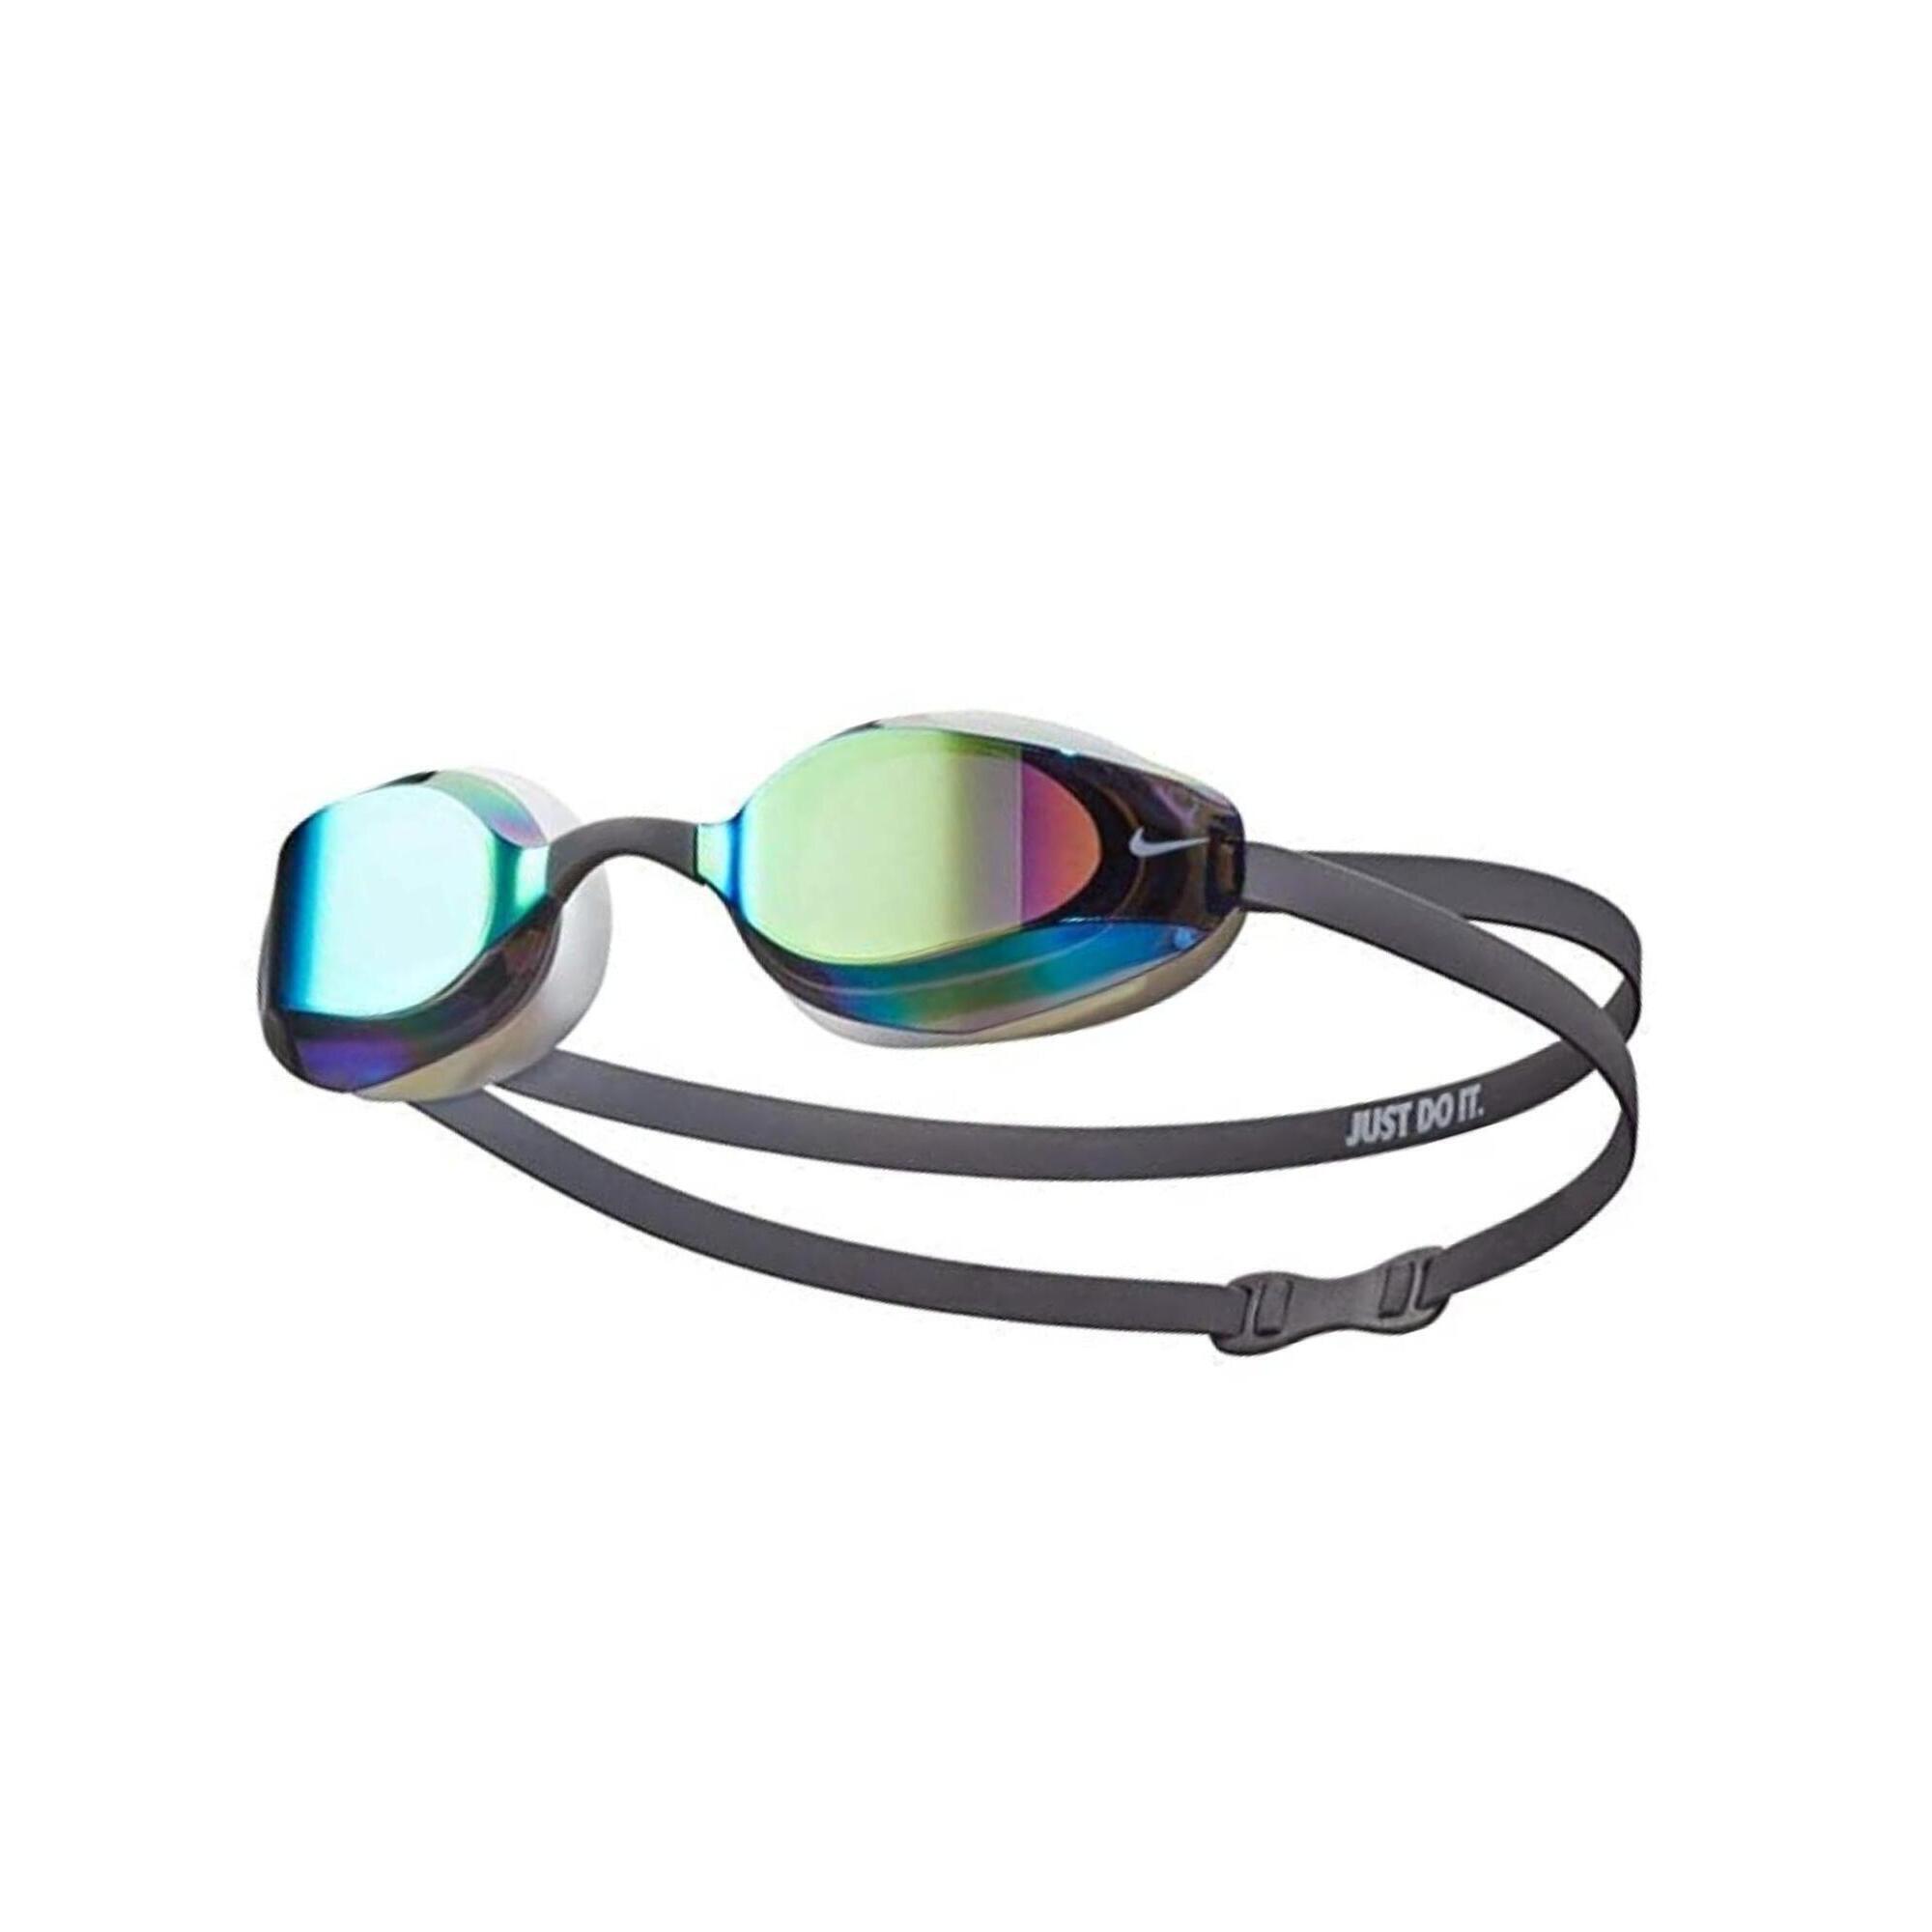 NIKE Swim vapor mirror goggle men's swimming swimming goggle